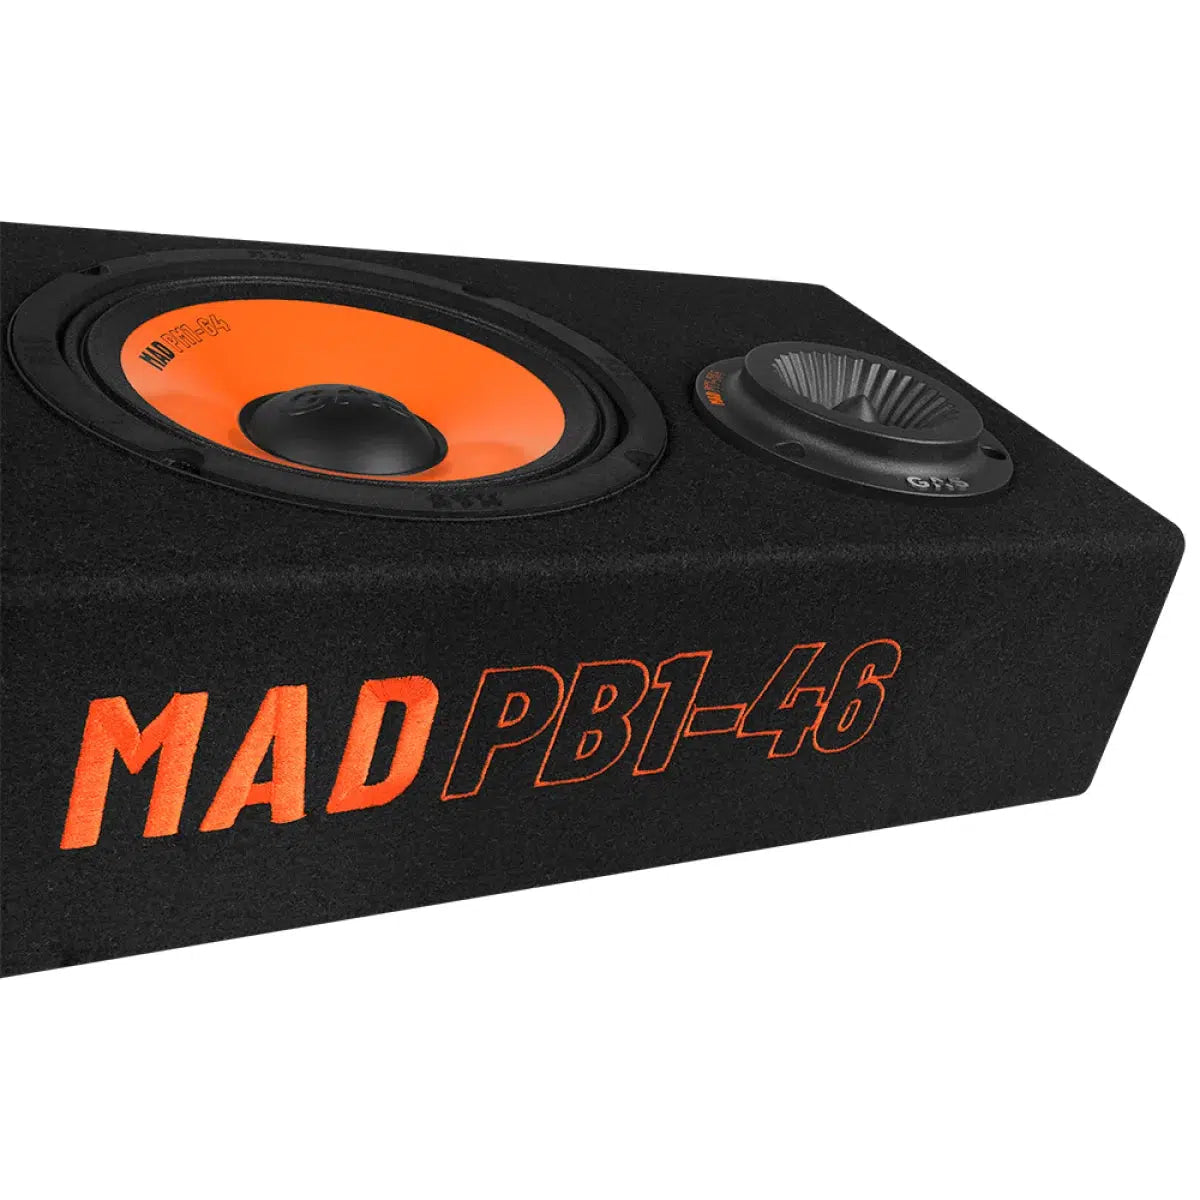 GAS-Mad PB1 46-6.5" (16,5cm) cabinet speaker-Masori.de